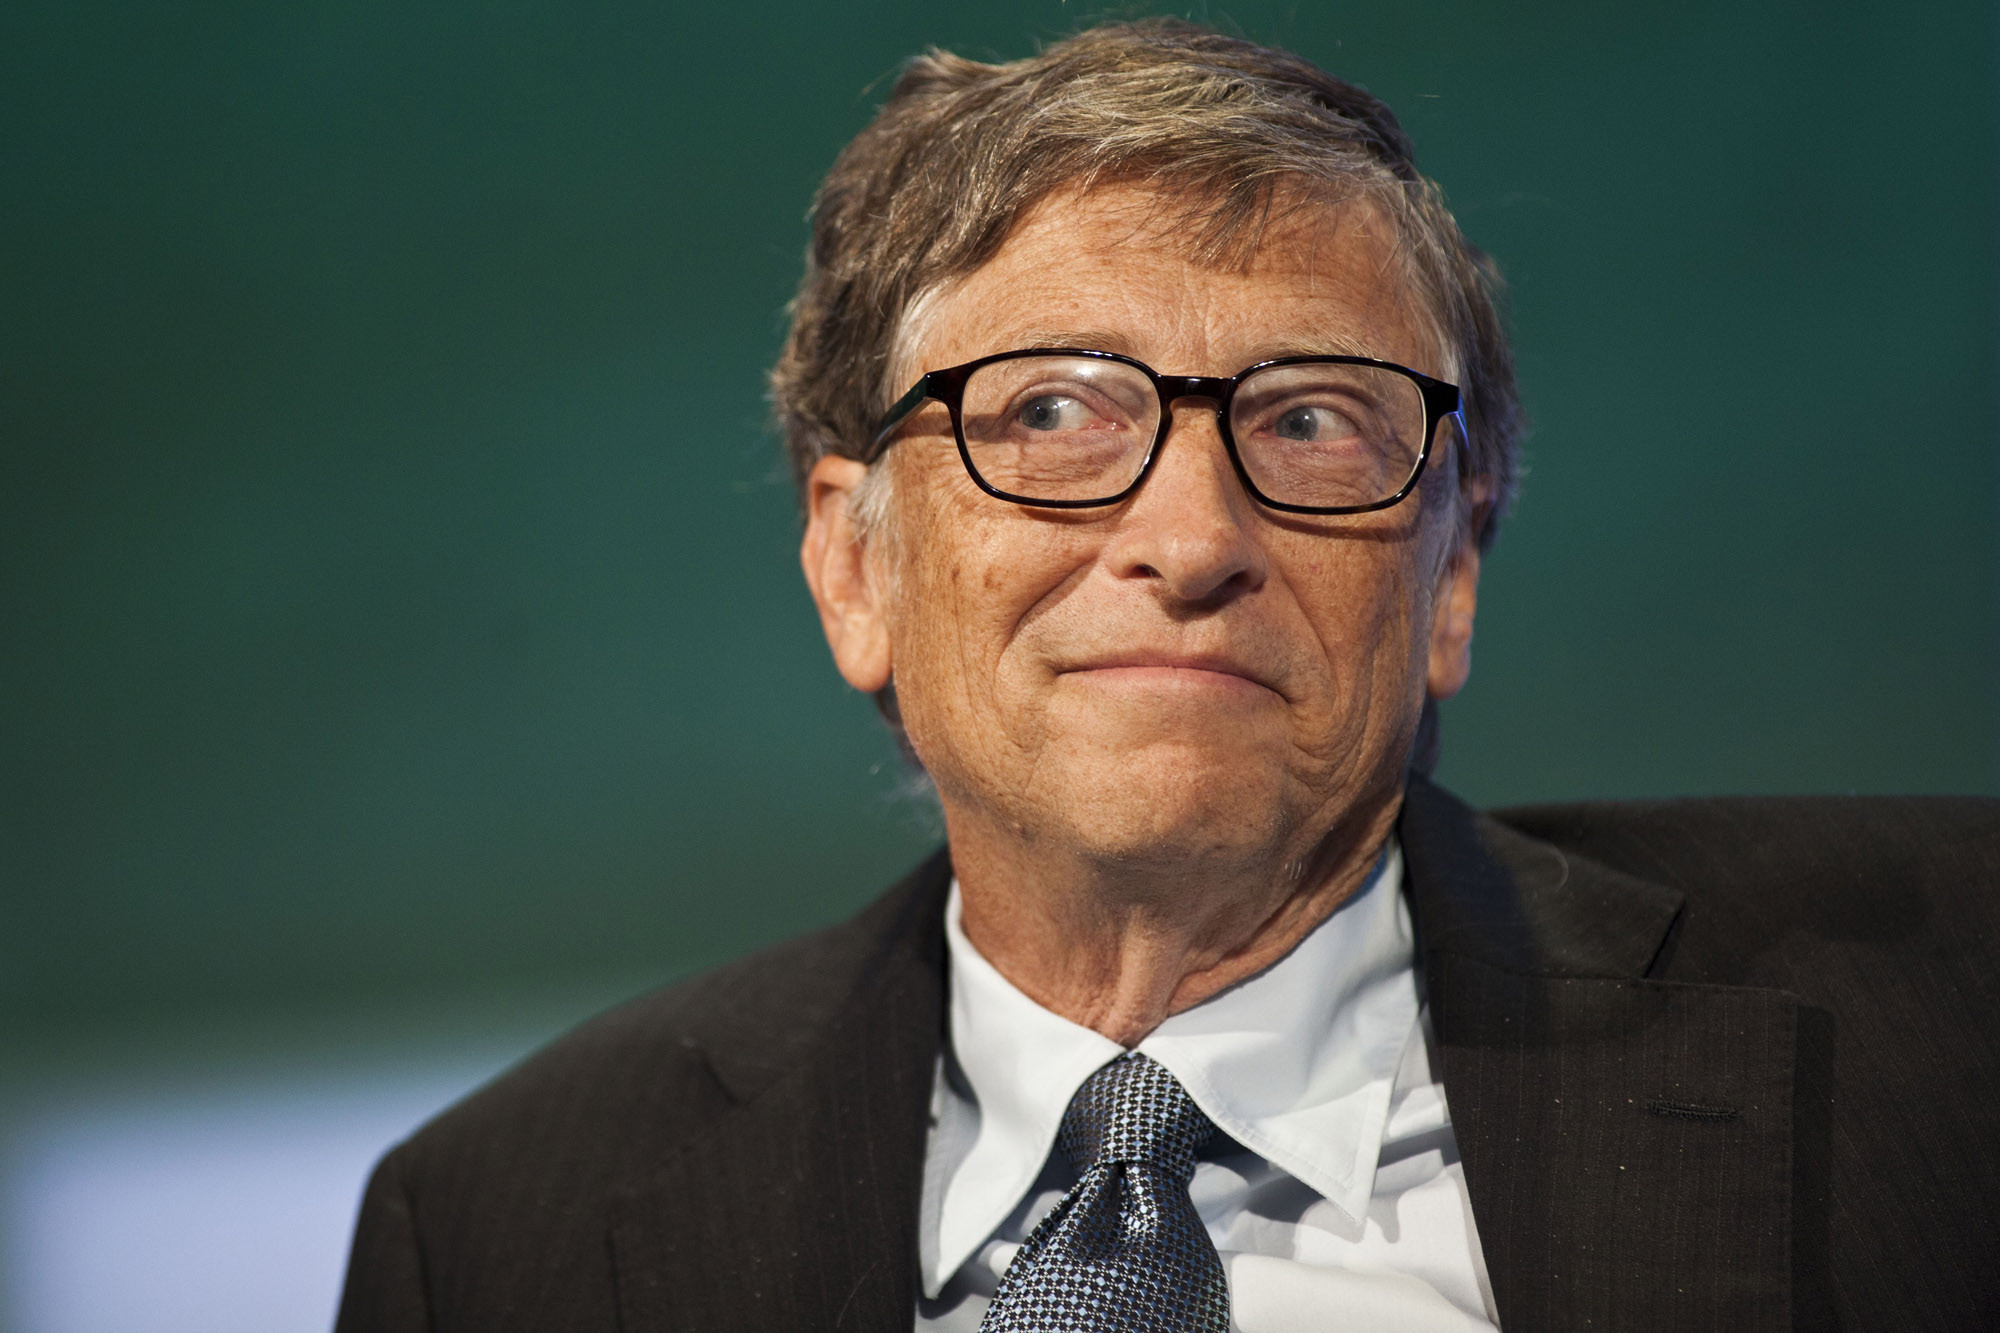 Pour Bill Gates, les réunions en réalité virtuelle devraient arriver d'ici 3 ans dans le metaverse